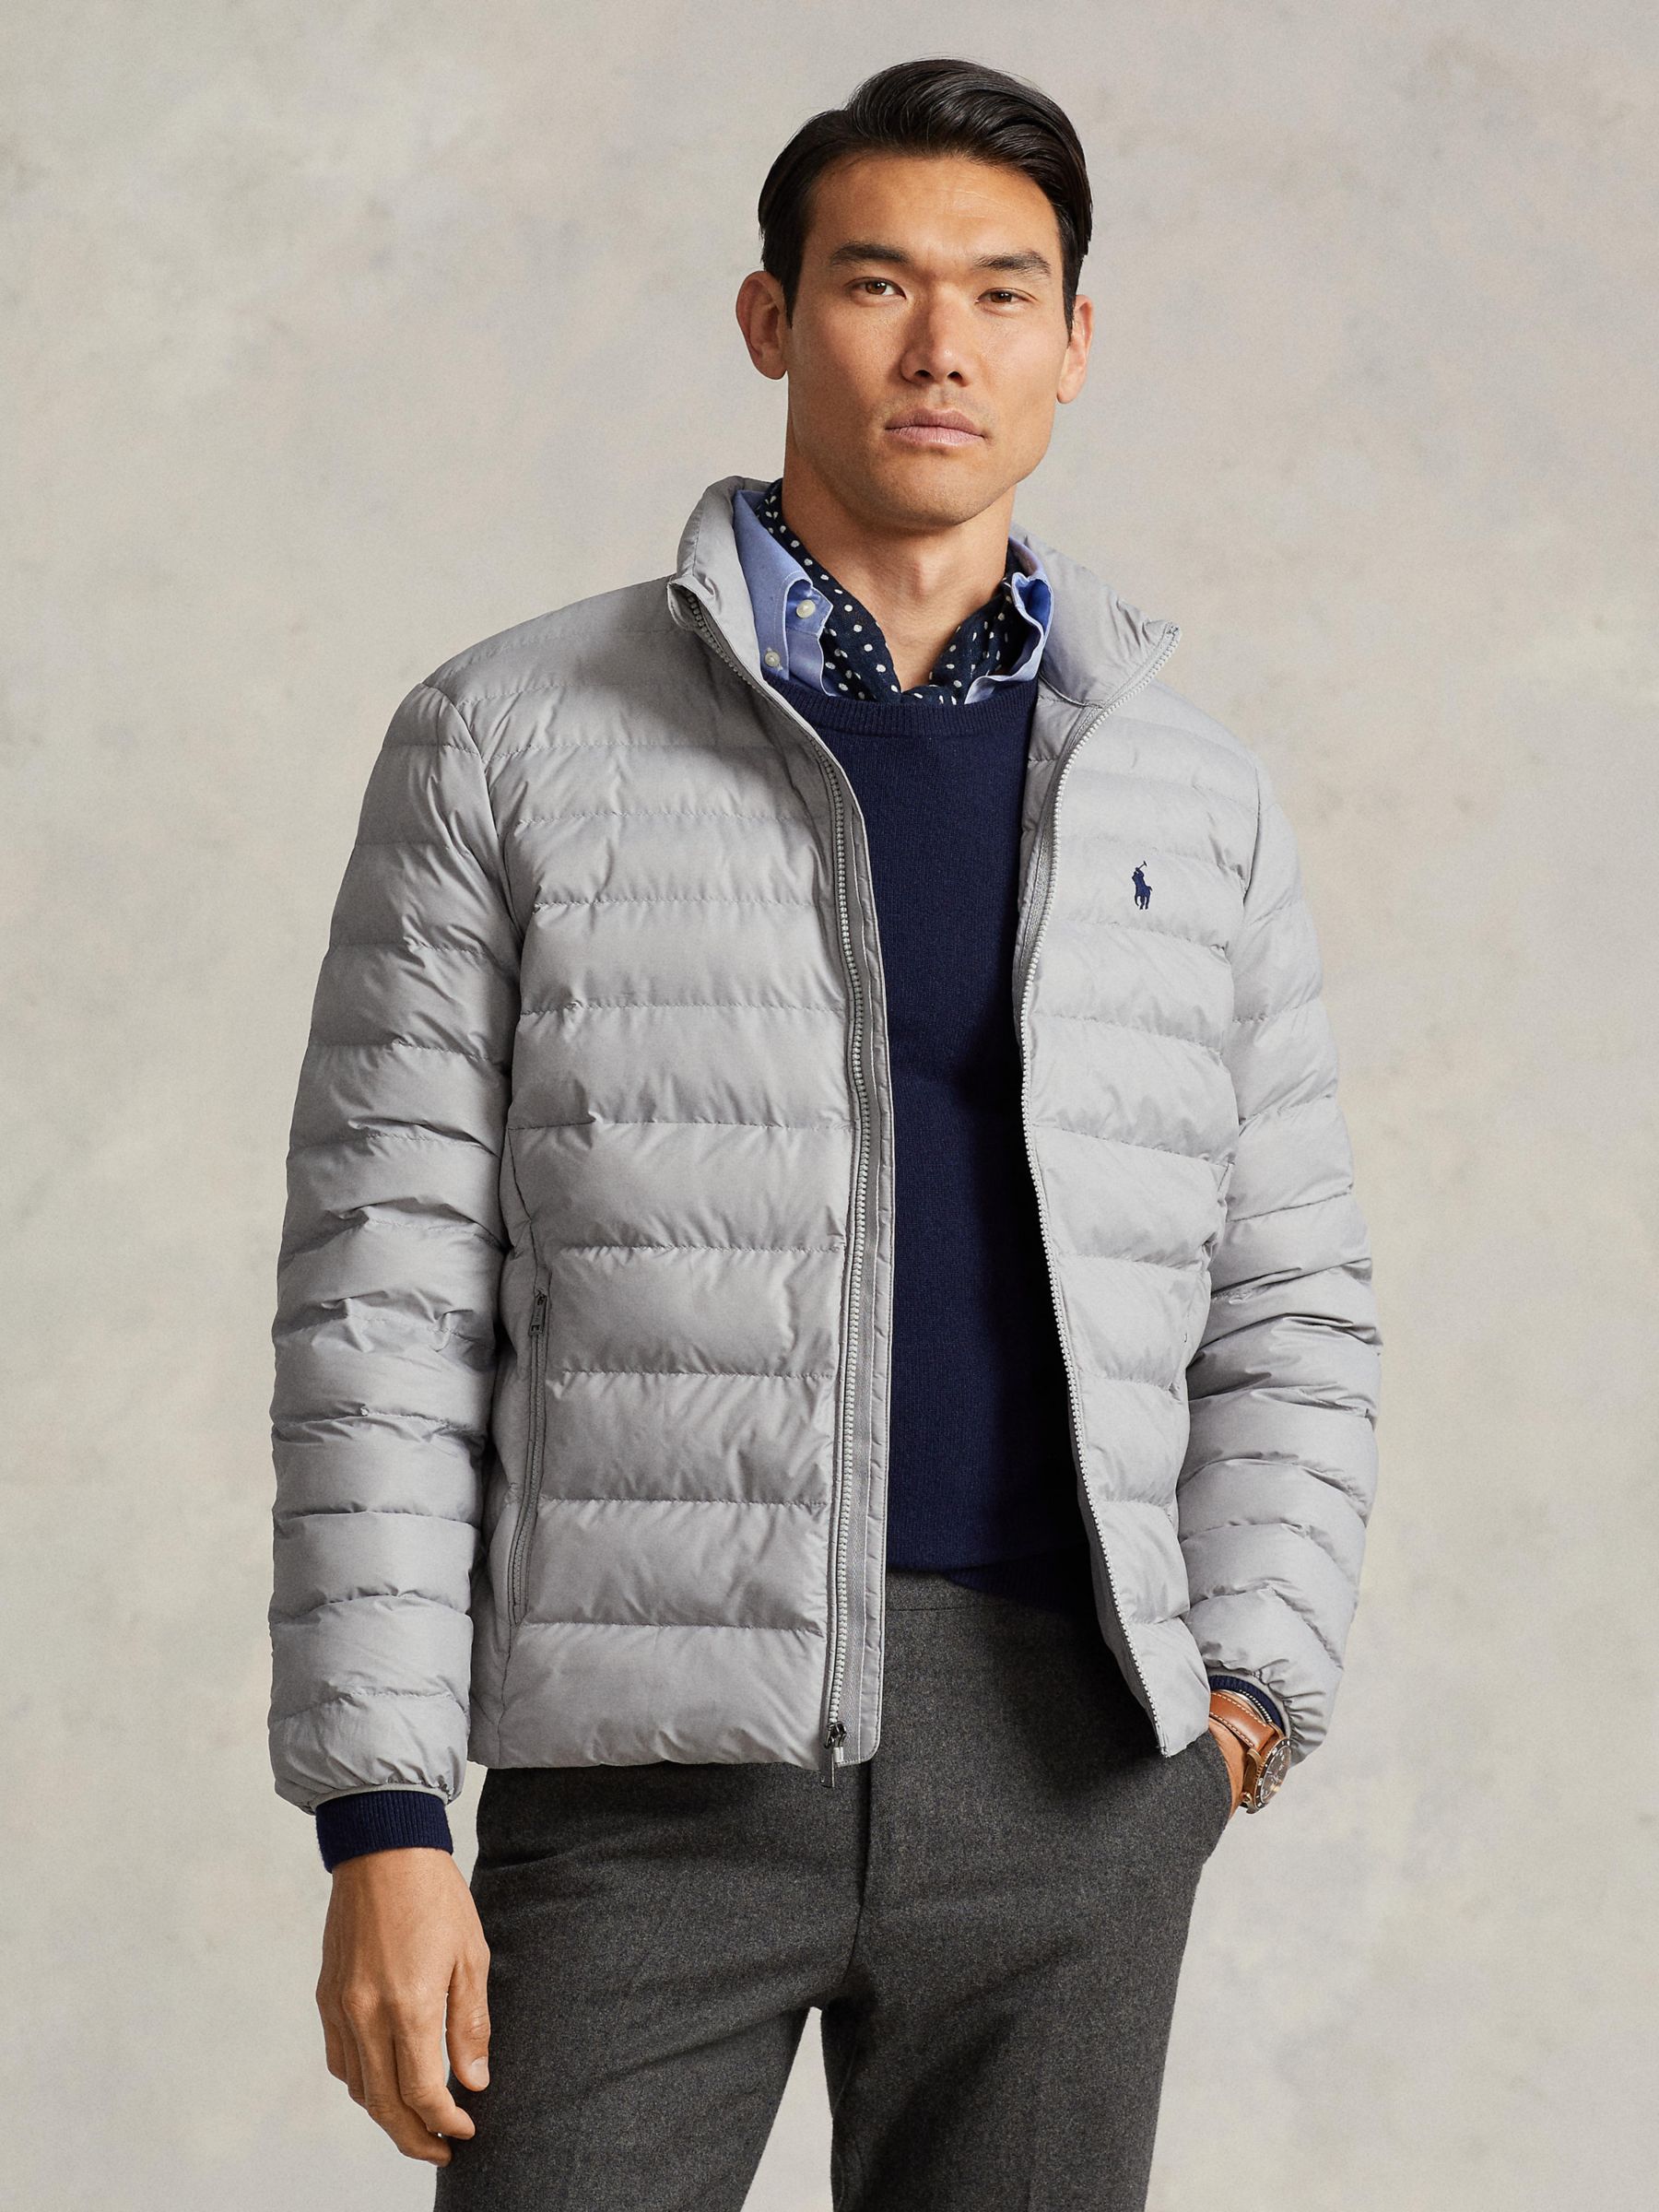 Ralph Lauren Men's Coats & Jackets